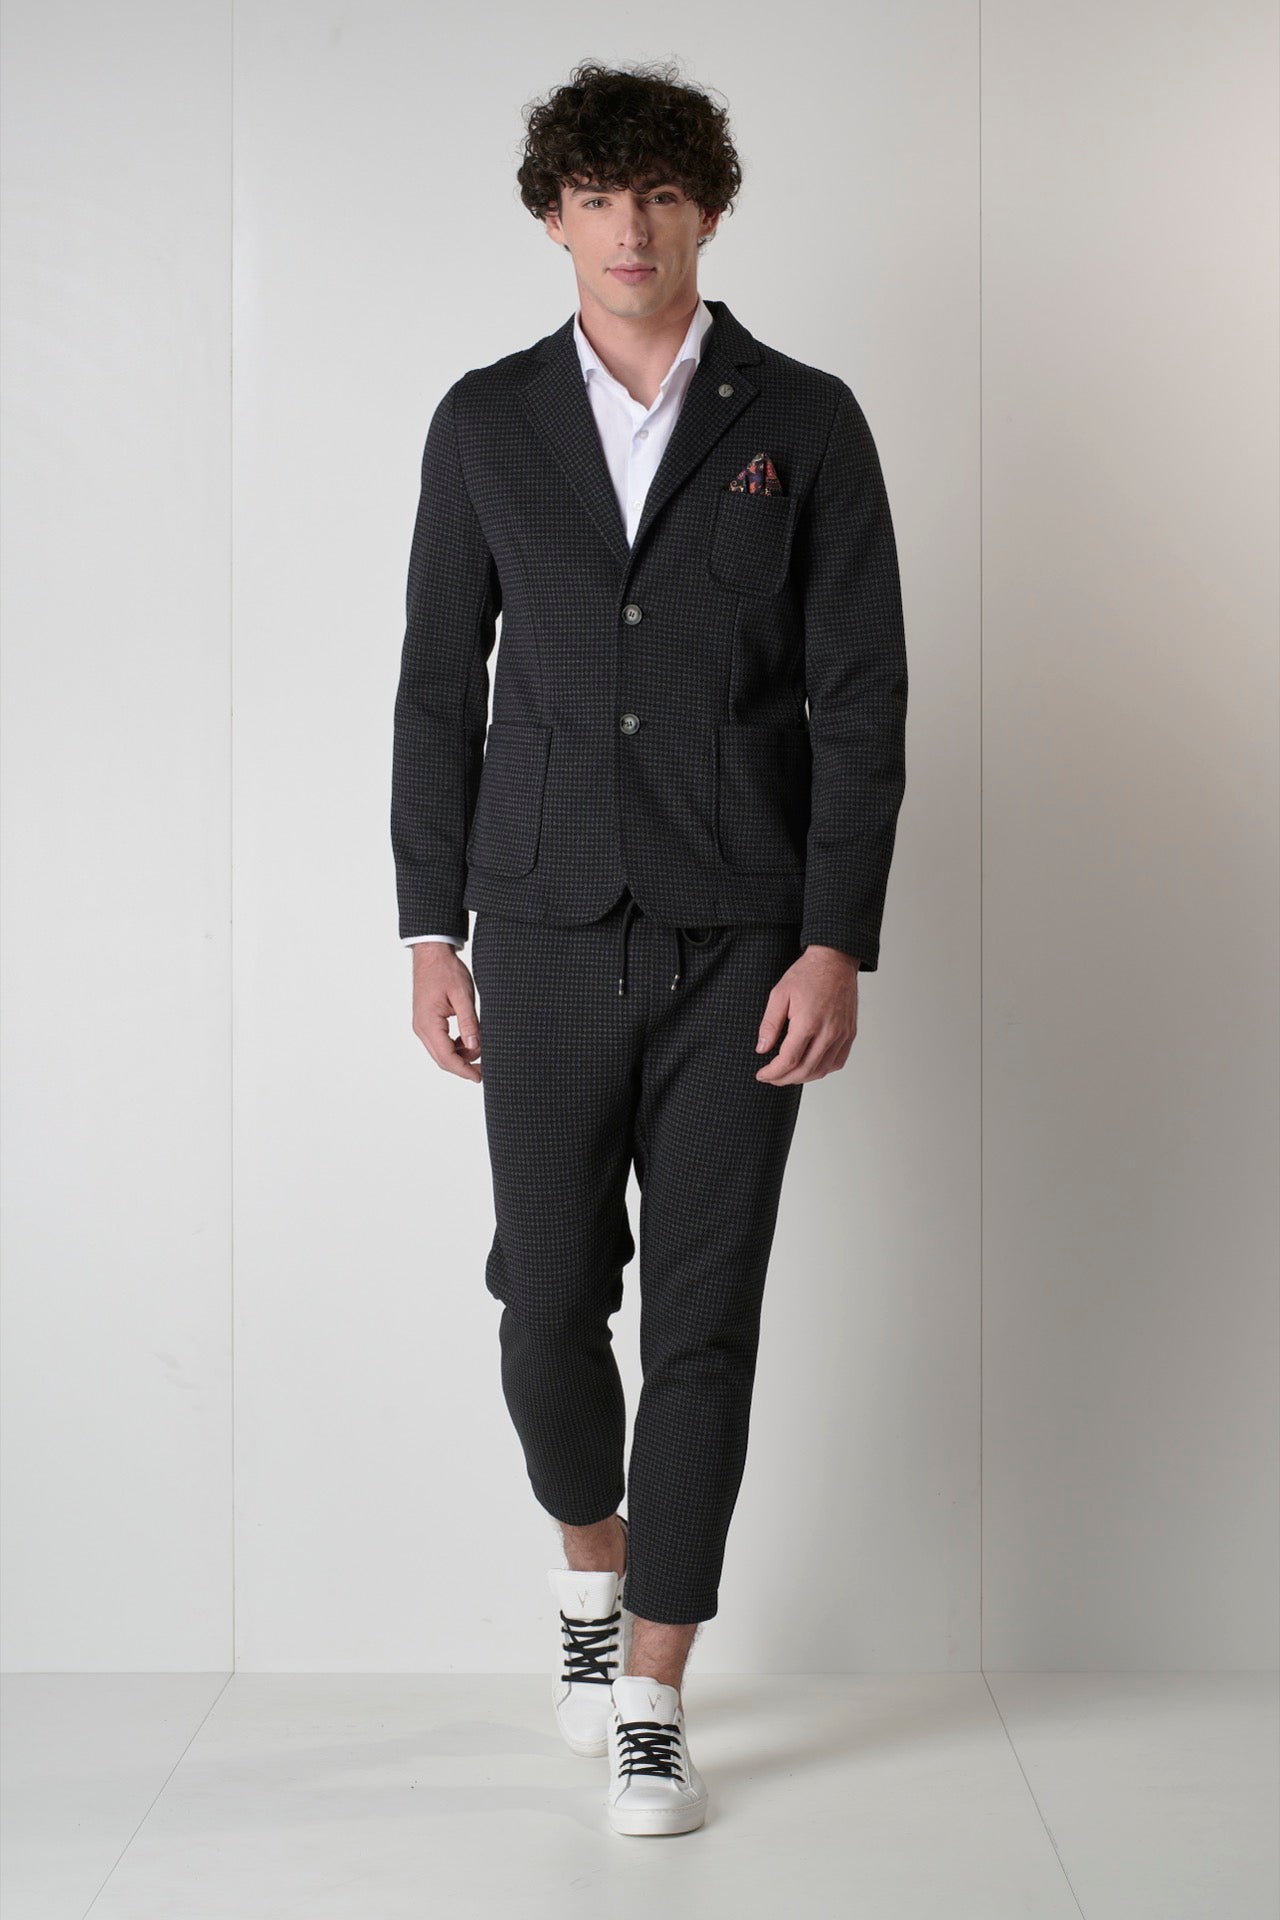 Black and Gray Pied de Poule Tailored Suit